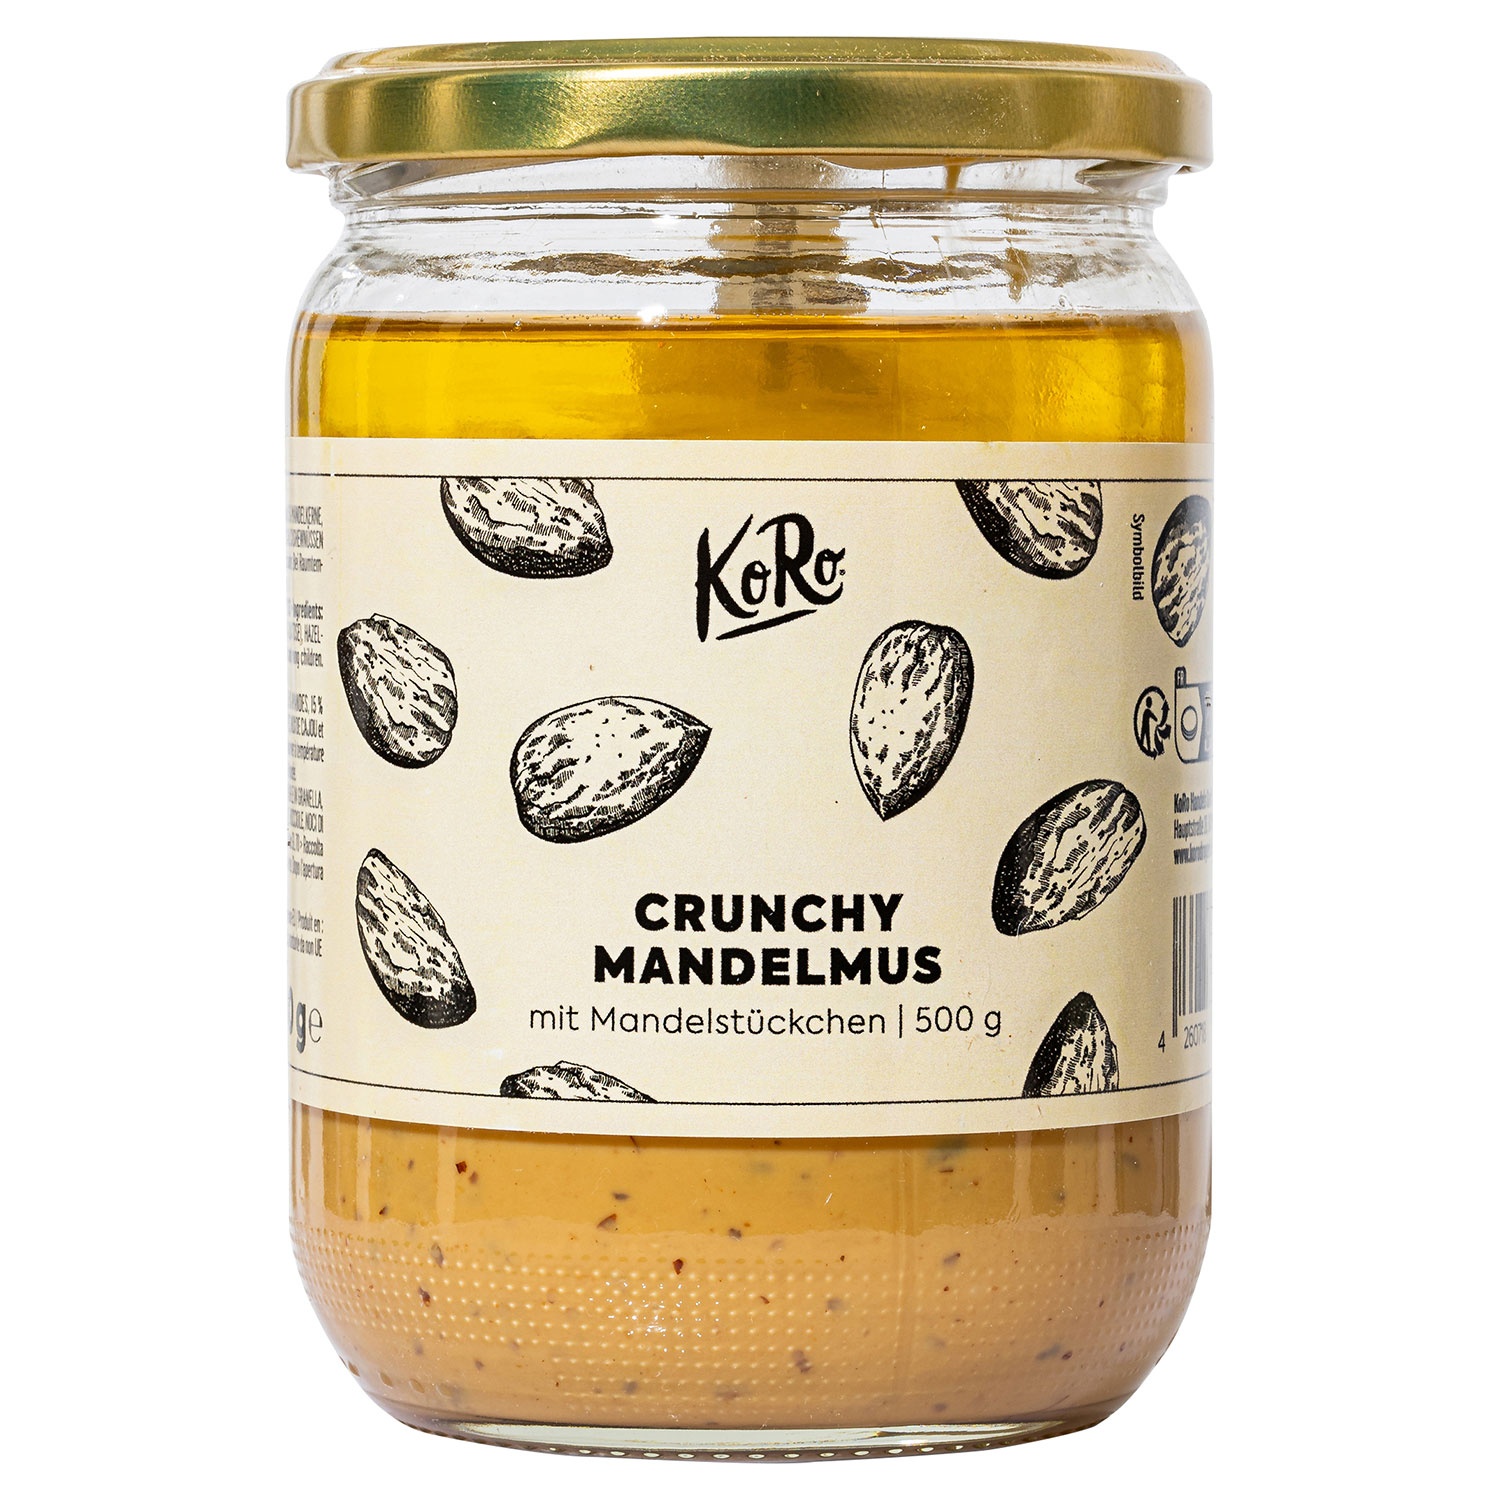 KORO Crunchy Mandelmus 500 g